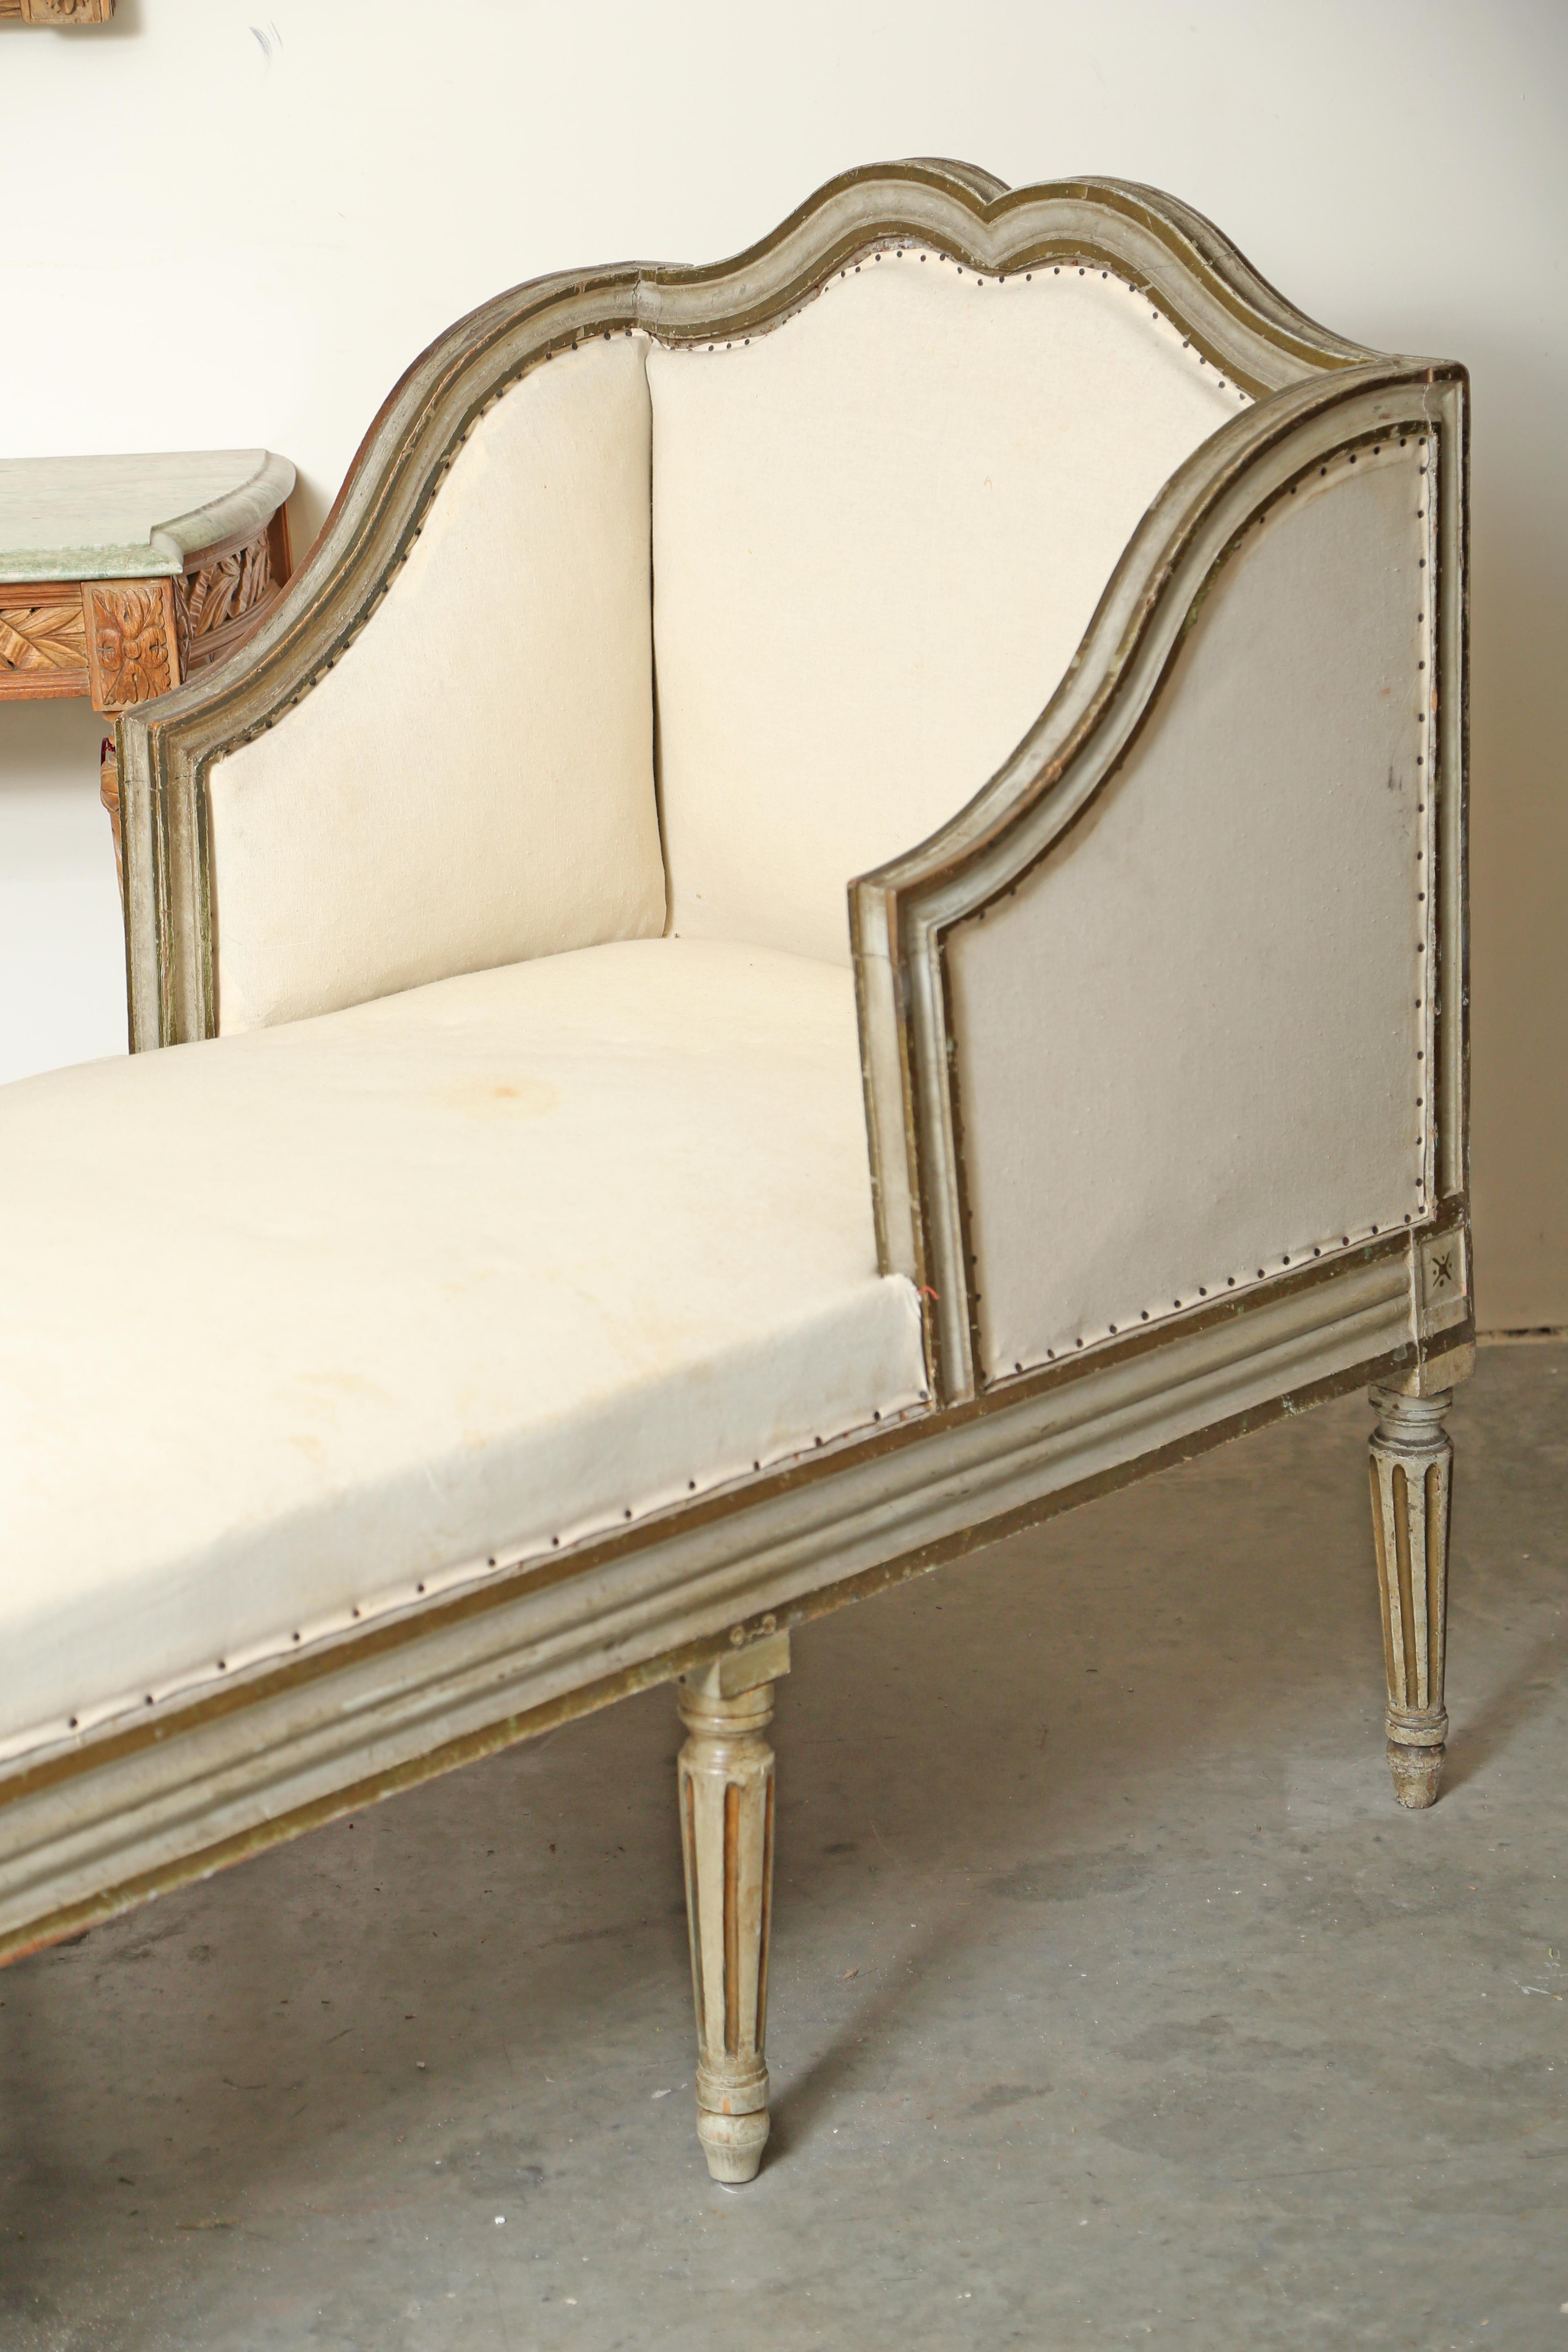 Louis XVI Chaiselongue, entweder Ende des 18. oder Anfang des 19. Jahrhunderts. Dieses Stück ist noch in der Originalfarbe und mit weißem Musselin gepolstert. Es wird von acht säulenartigen/geriffelten Beinen getragen. Die Farbe ist etwas